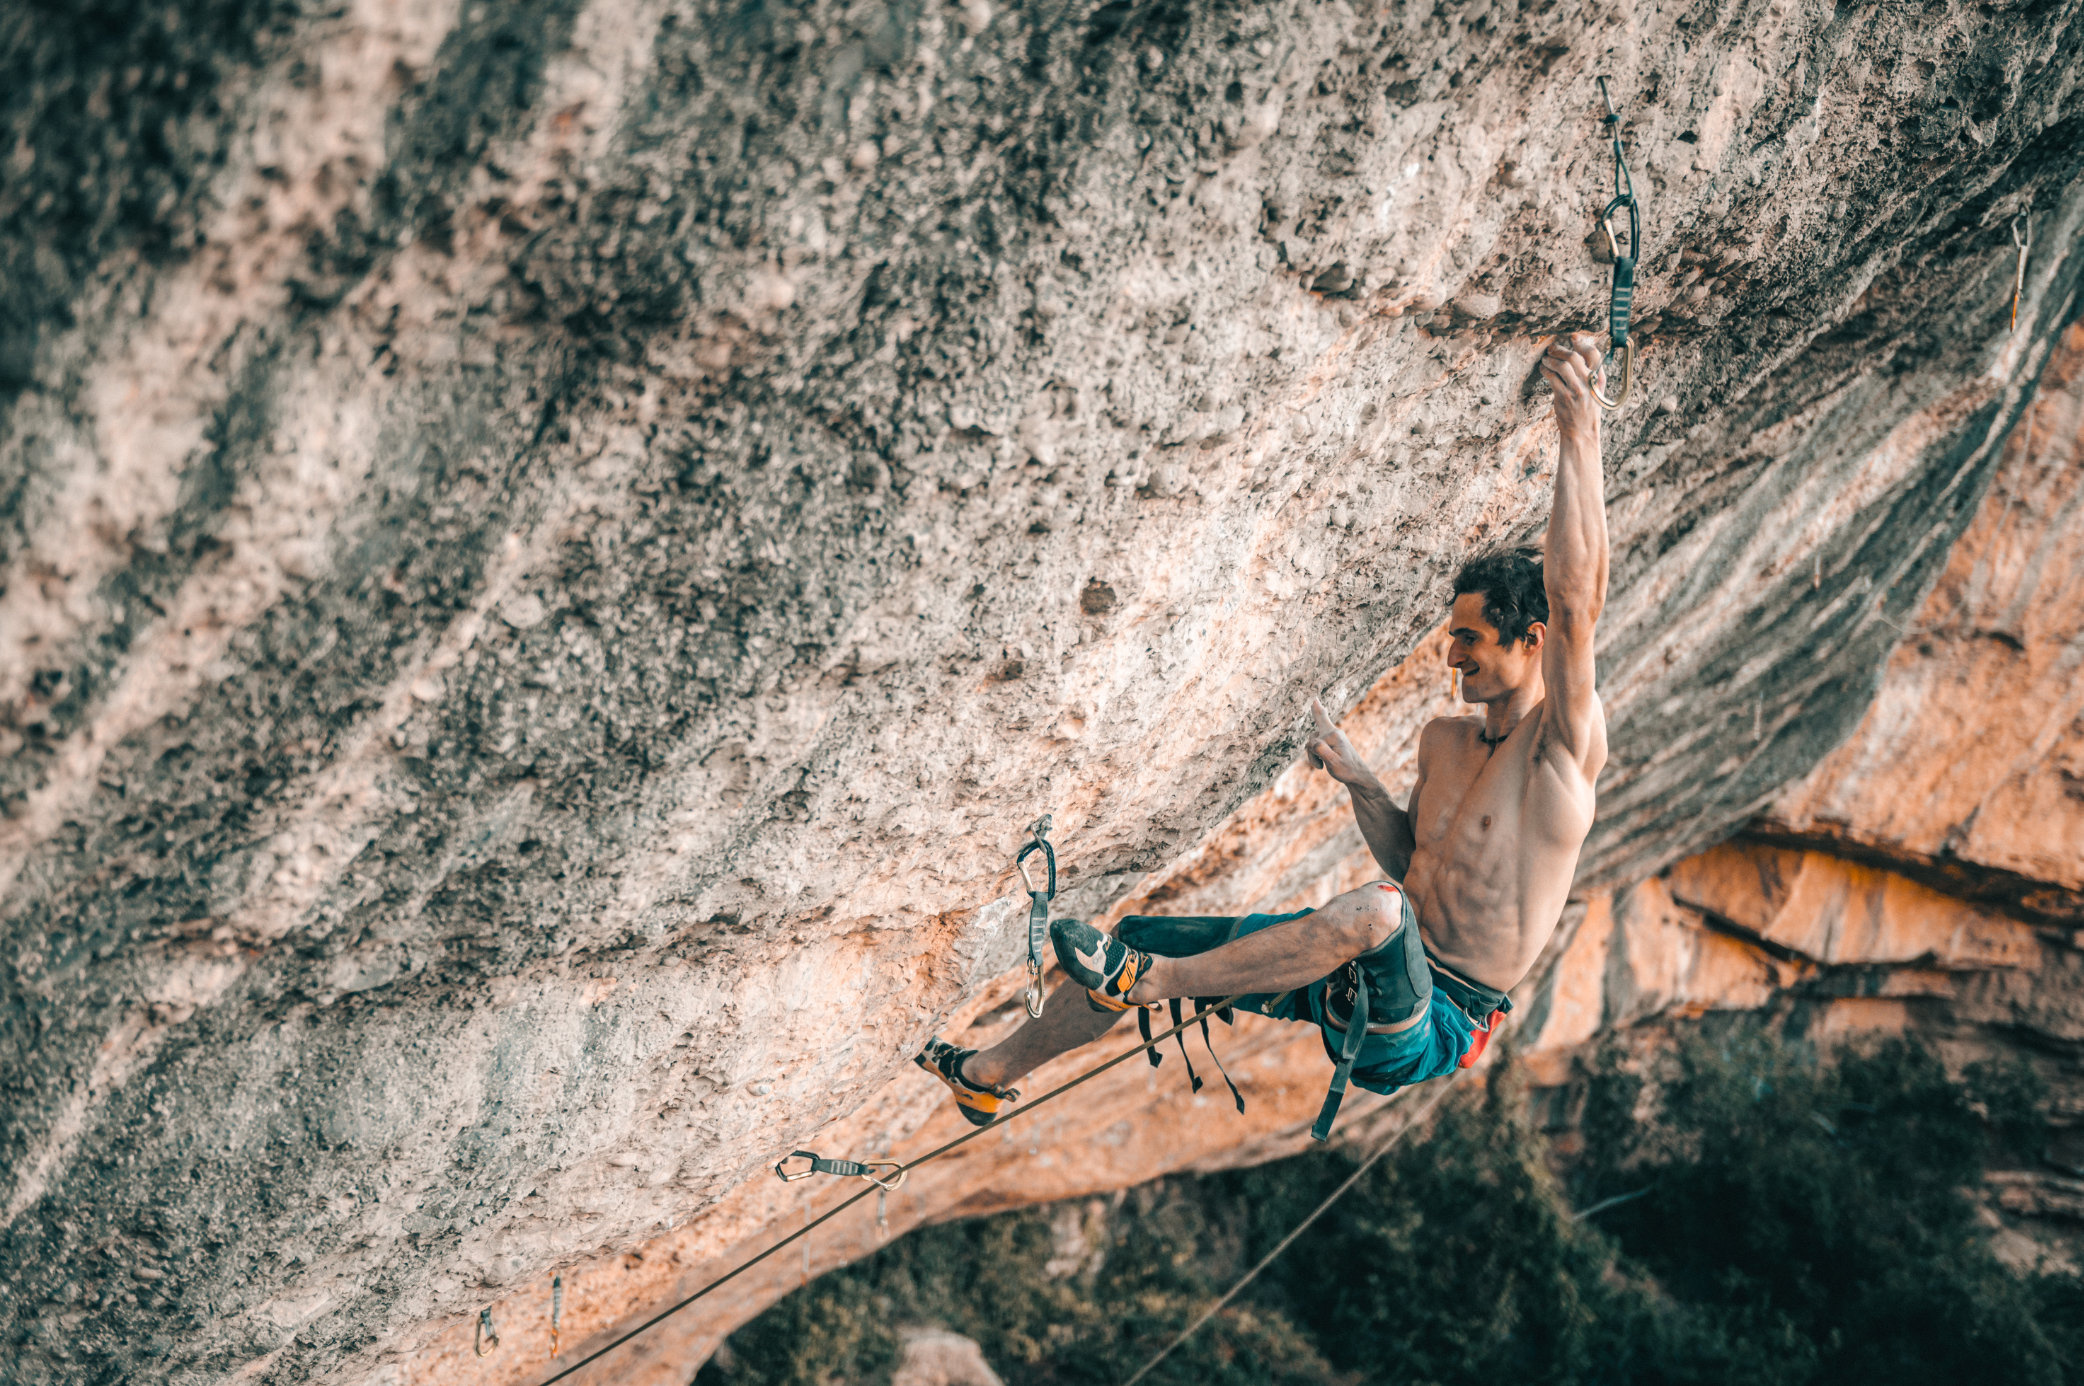 Rock Climbing: Climbing Adam Ondra, Czech Professional Rock Climber, Gearing up And Set-up, Communication And Technique Performance. 2090x1390 HD Wallpaper.